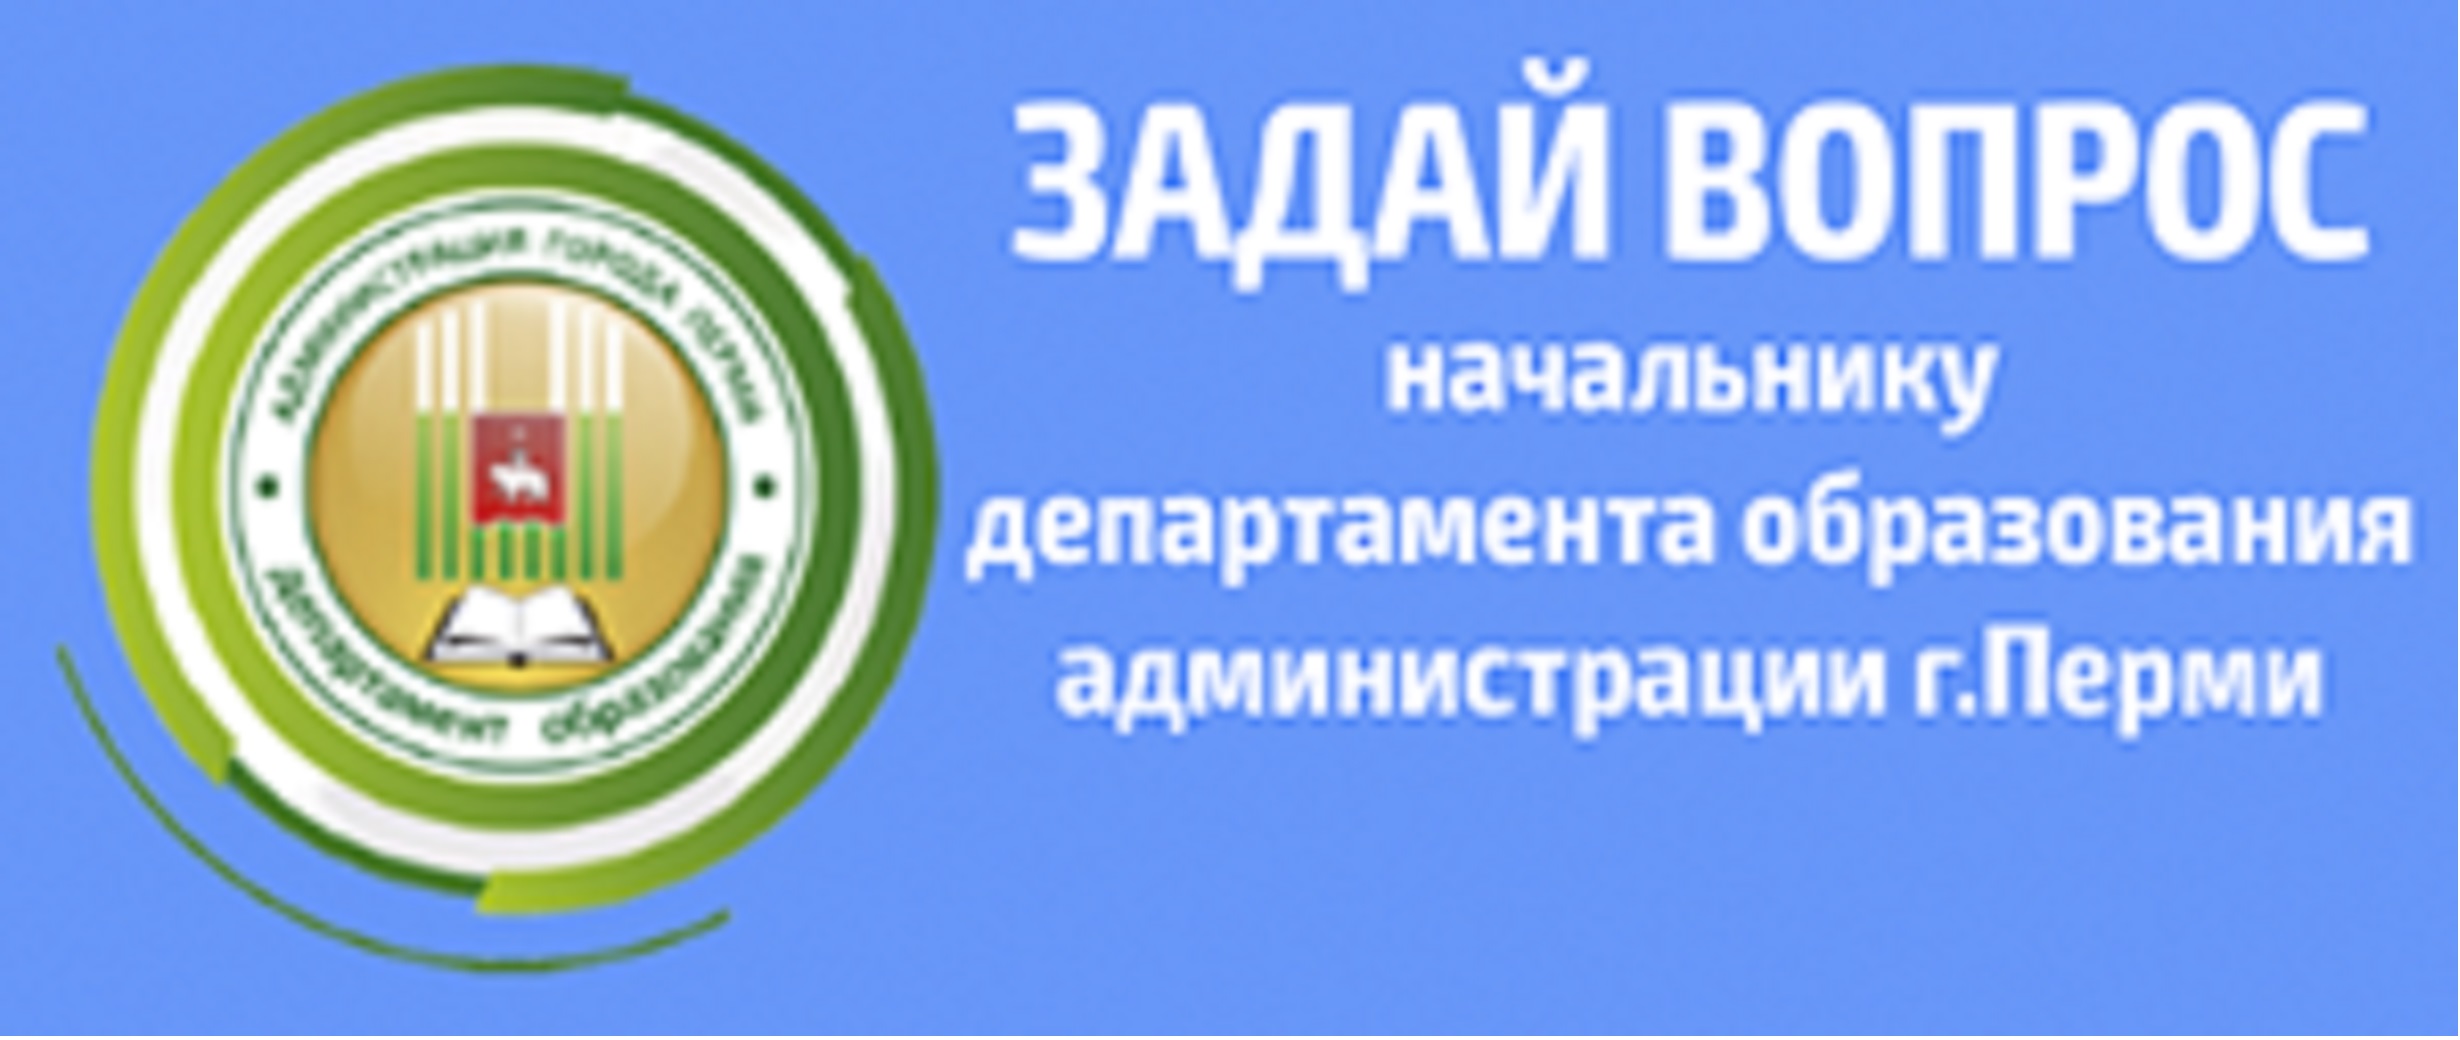 Департамент образования перми сайт